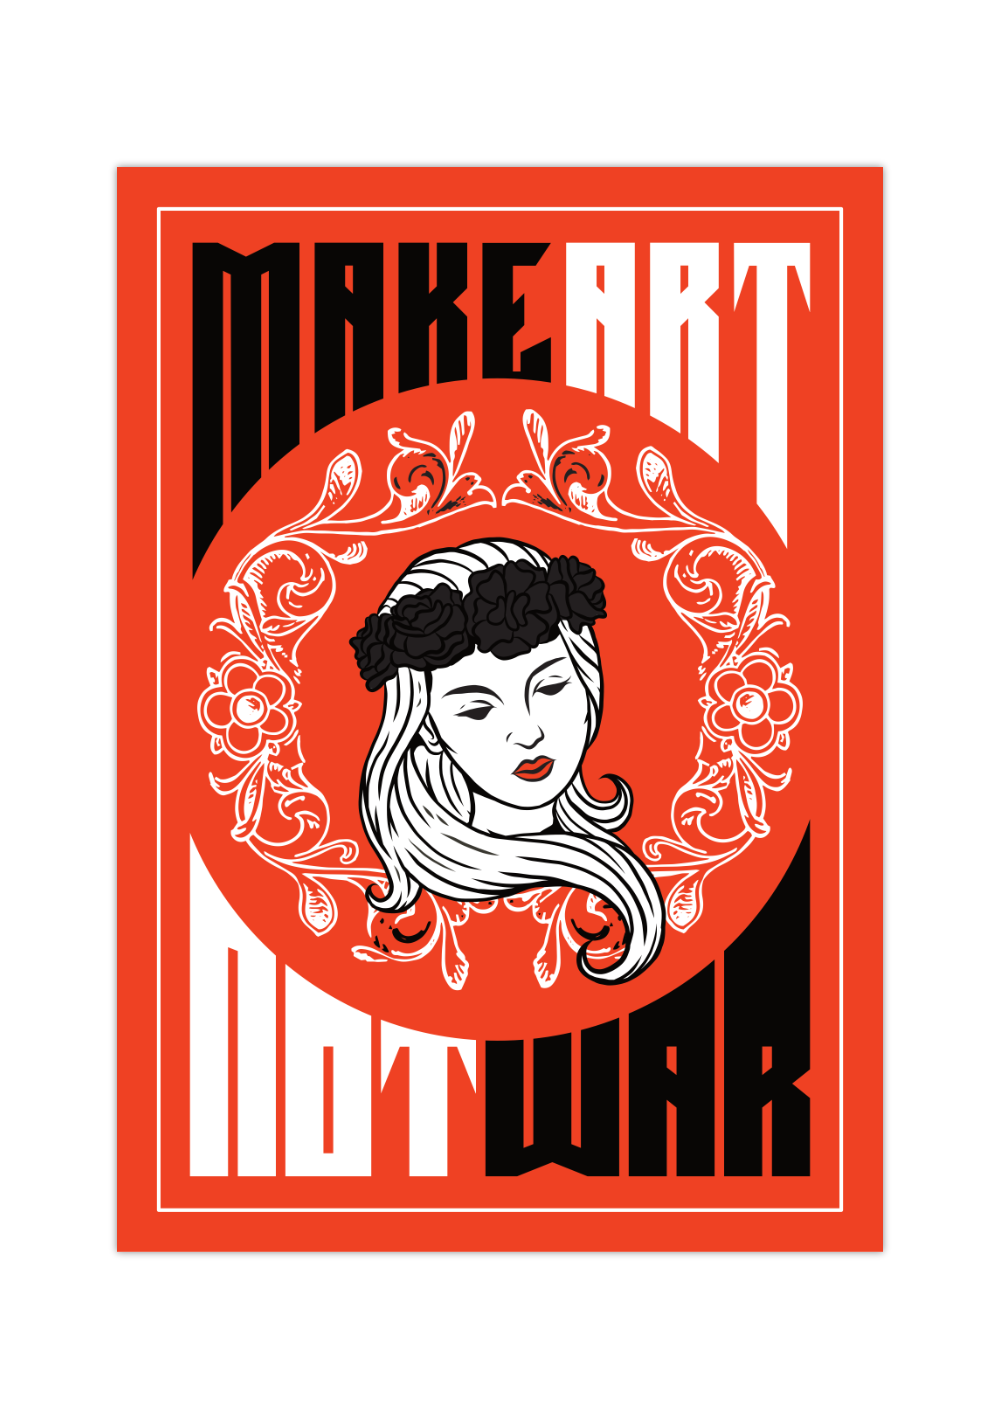 Das feminine Poster in schönem Rot zeigt dir eine Frau, die überschrieben ist mit dem Spruch " Make Love Not War".